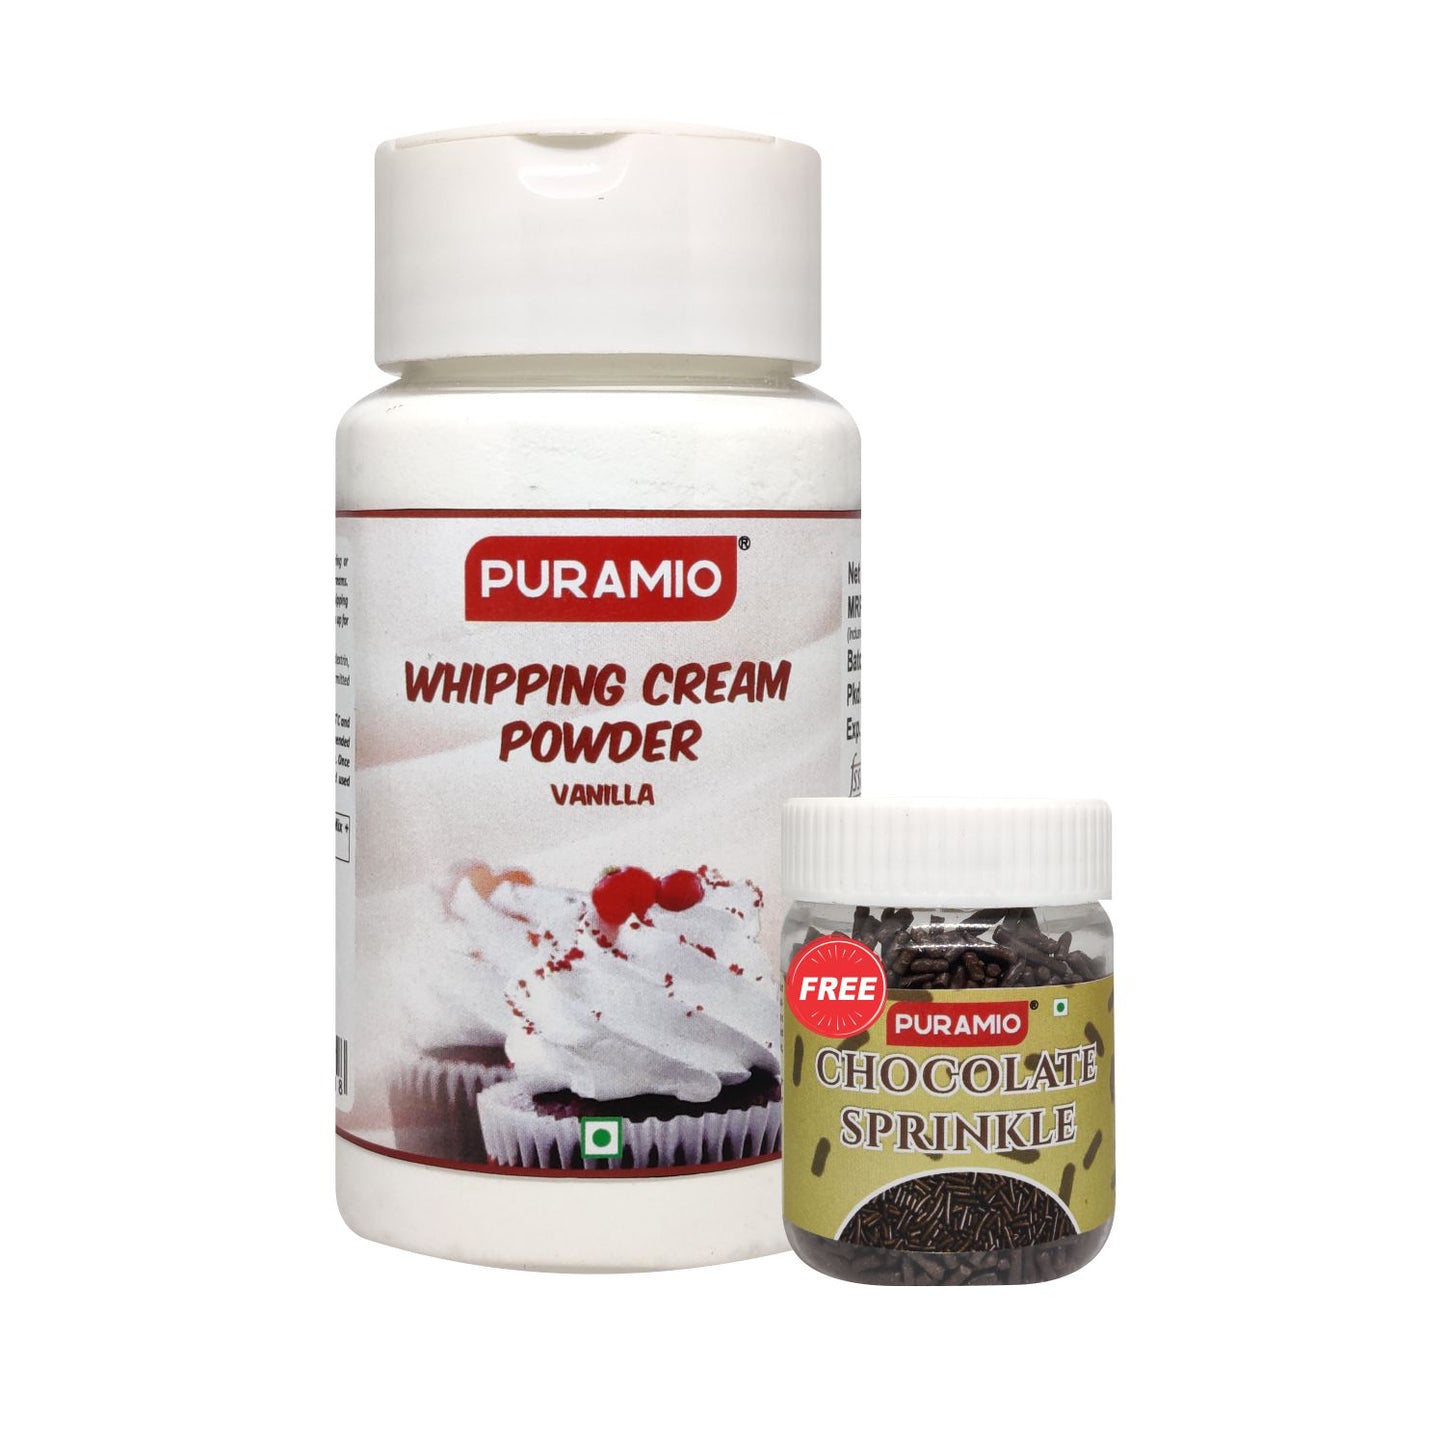 Puramio Whipping Cream Powder- Vanilla, Whipped Cream for Cake, 100g Pack + 25g Chocolate Sprinkle Free